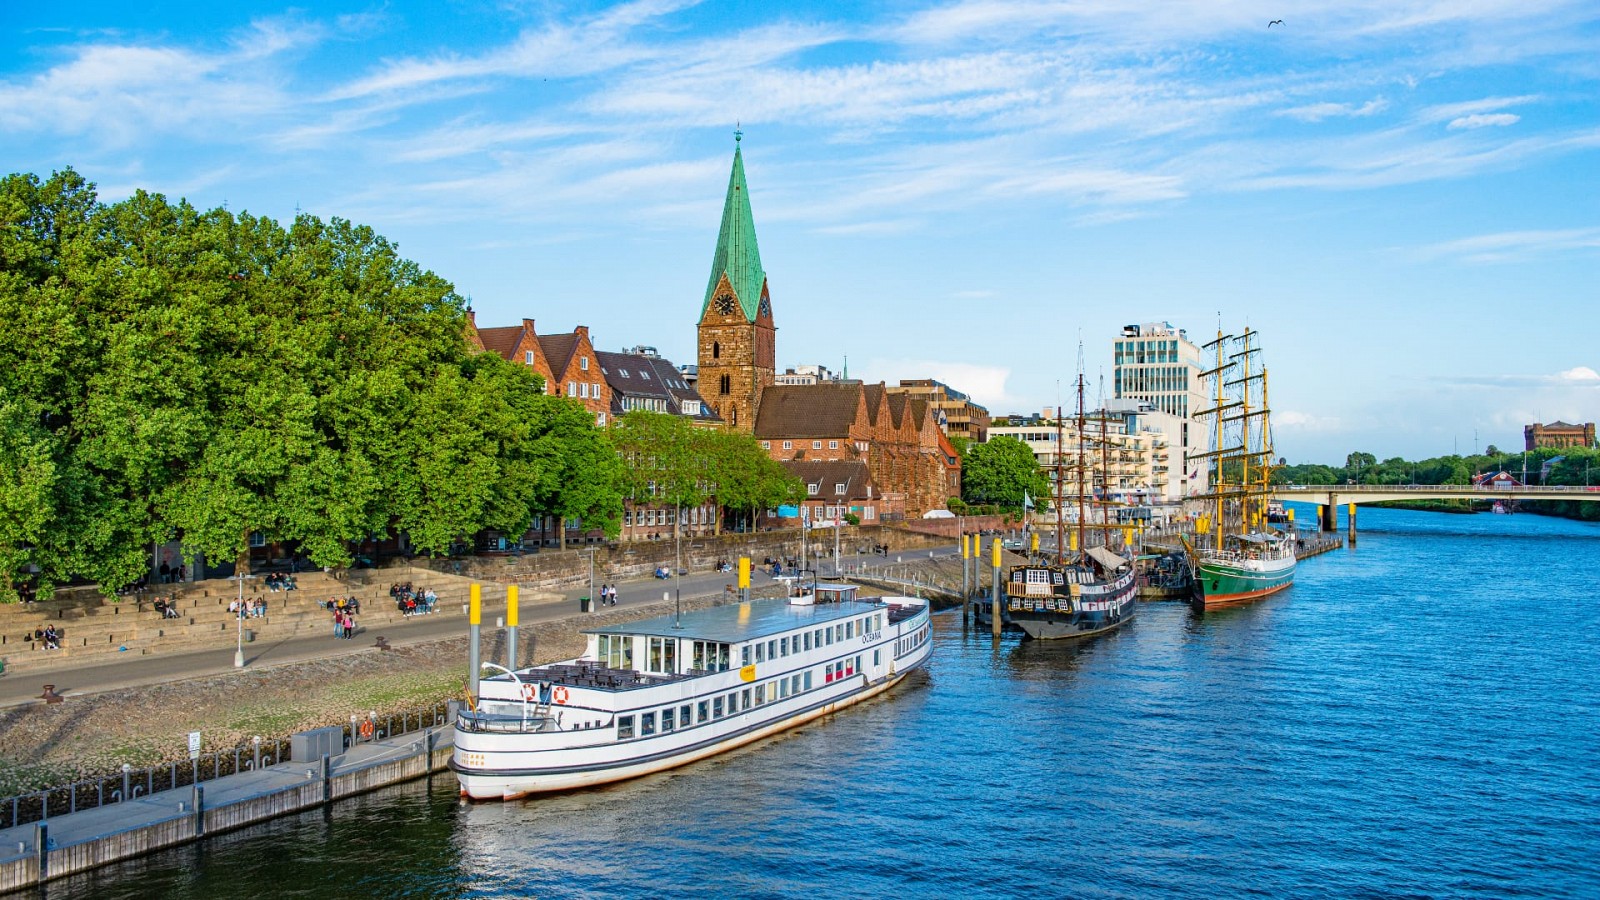 Perfekt für Städtereise in Bremen: Hanseatisches Flair an der Weser